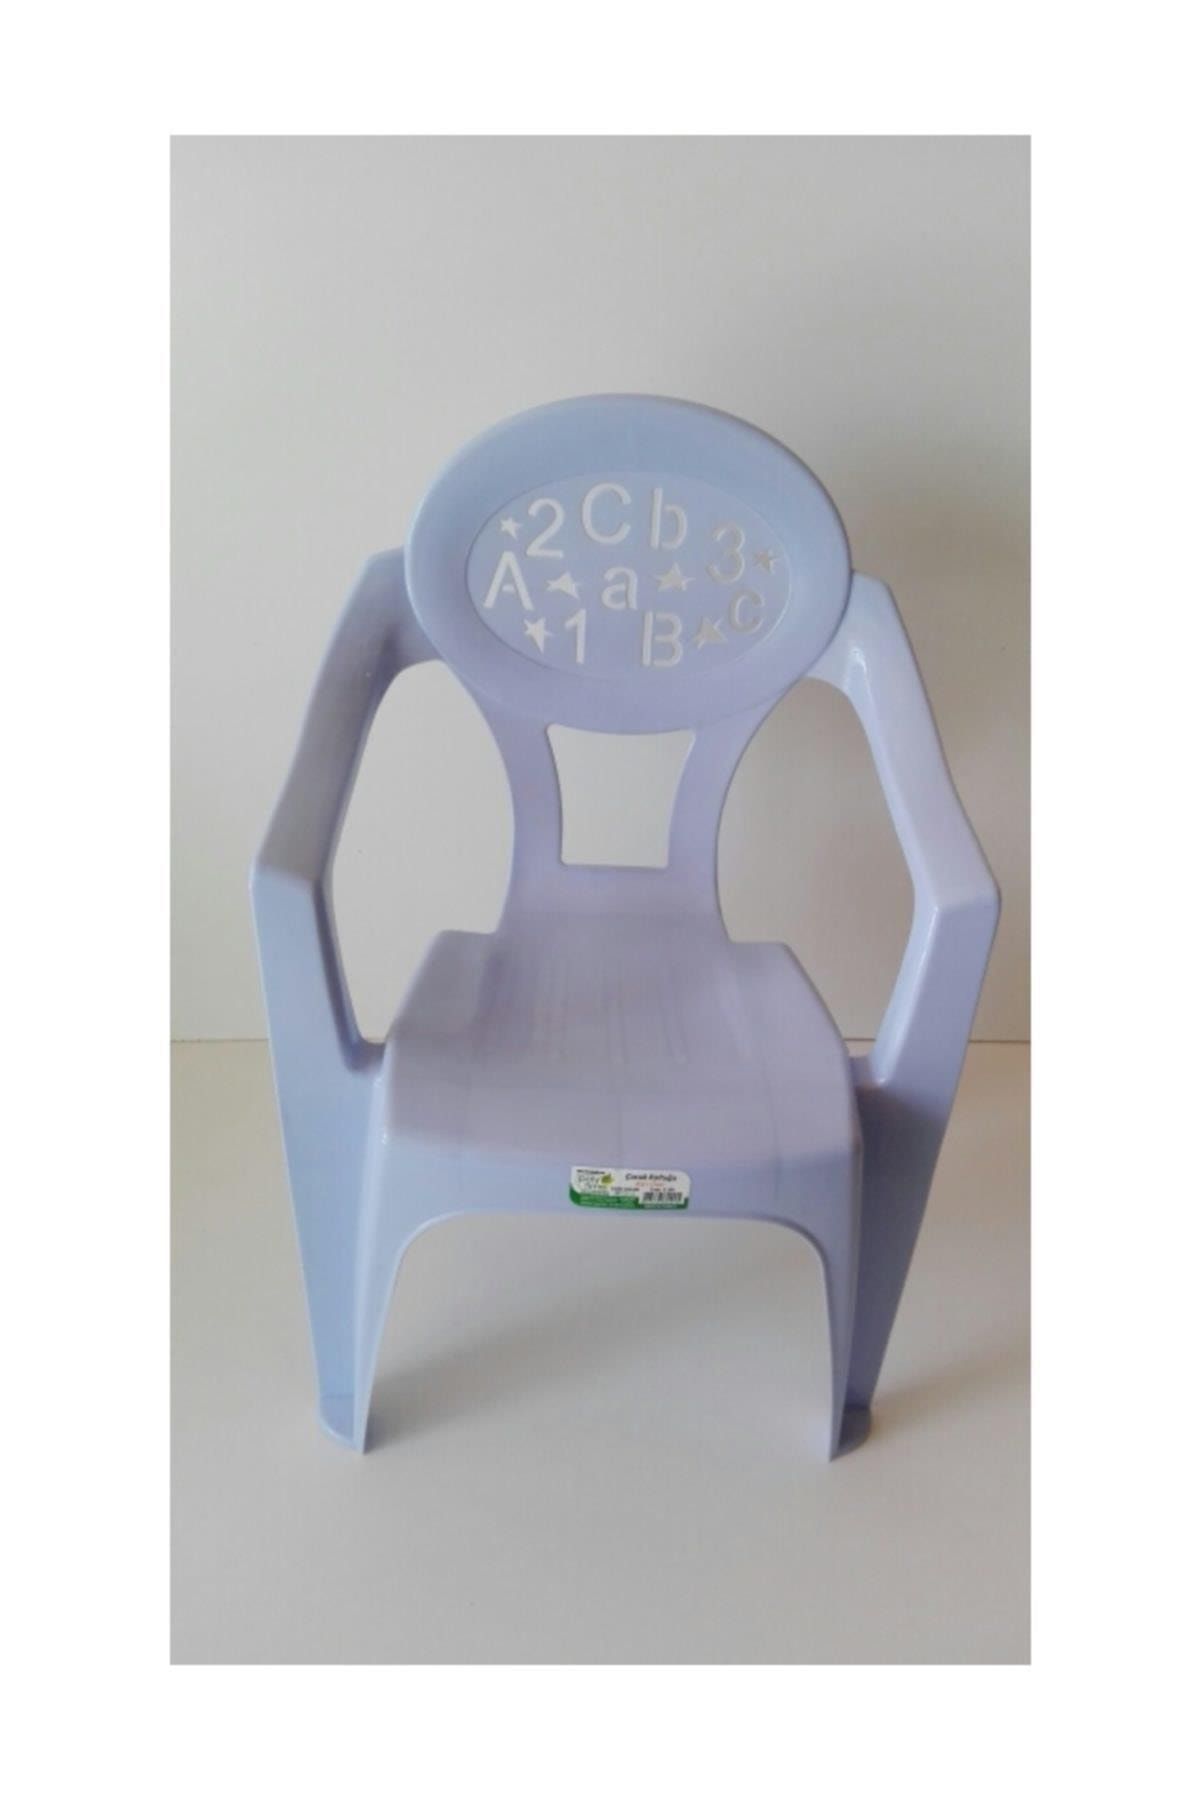 Genel Markalar Poly Time Çocuk Sandalyesi